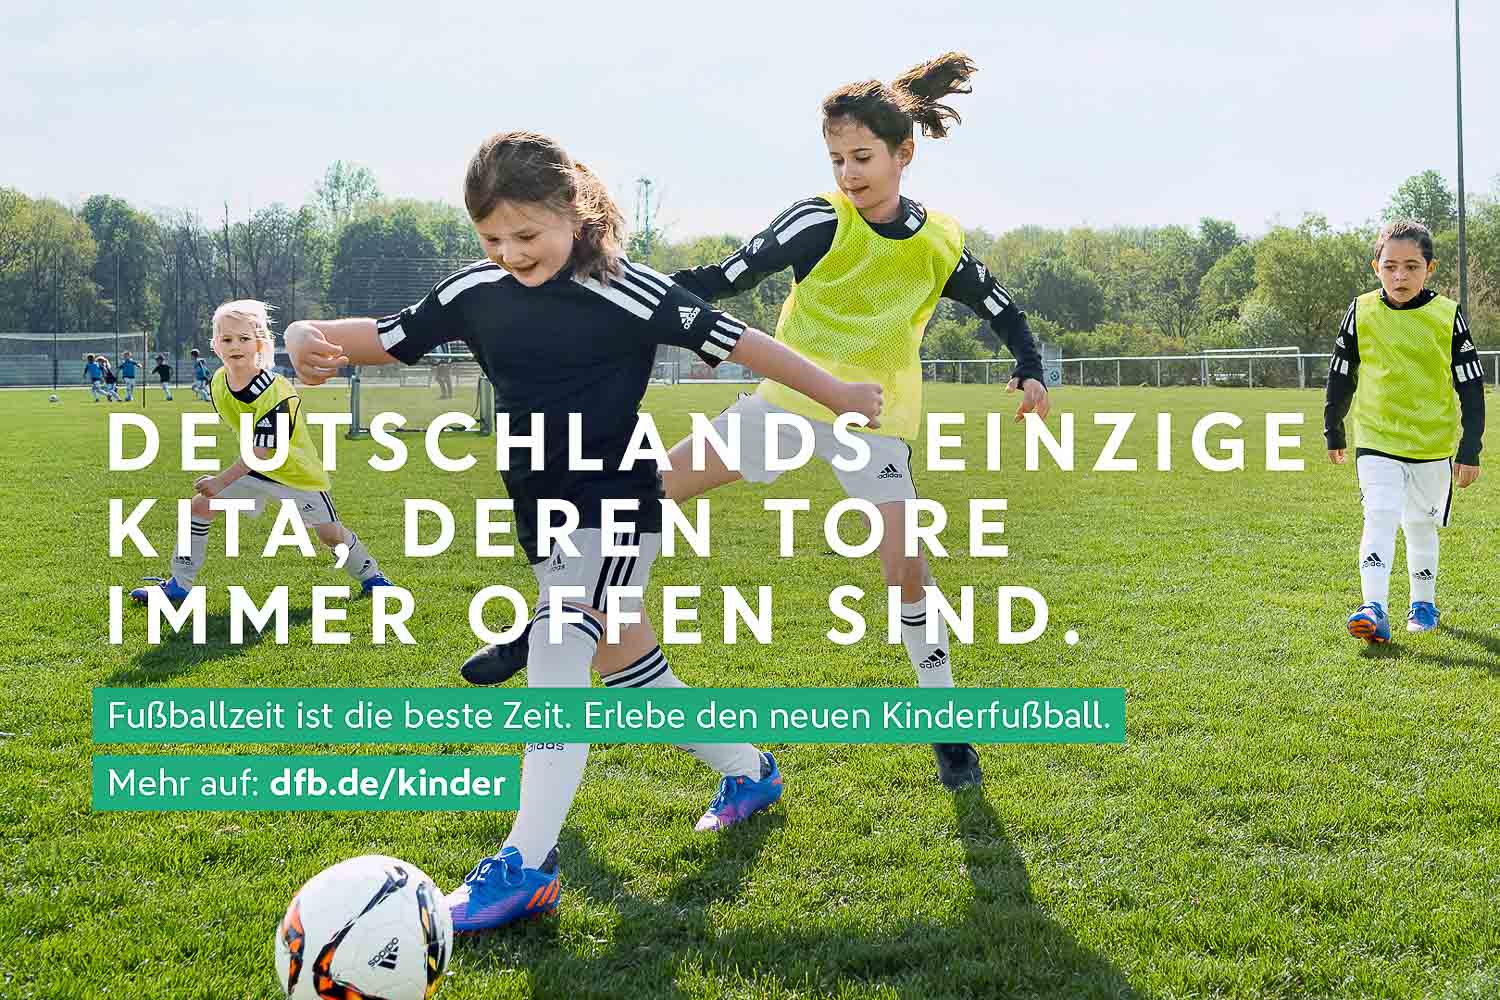 Der neue Kinderfußball folgt klaren Prinzipien. (Foto: DFB)